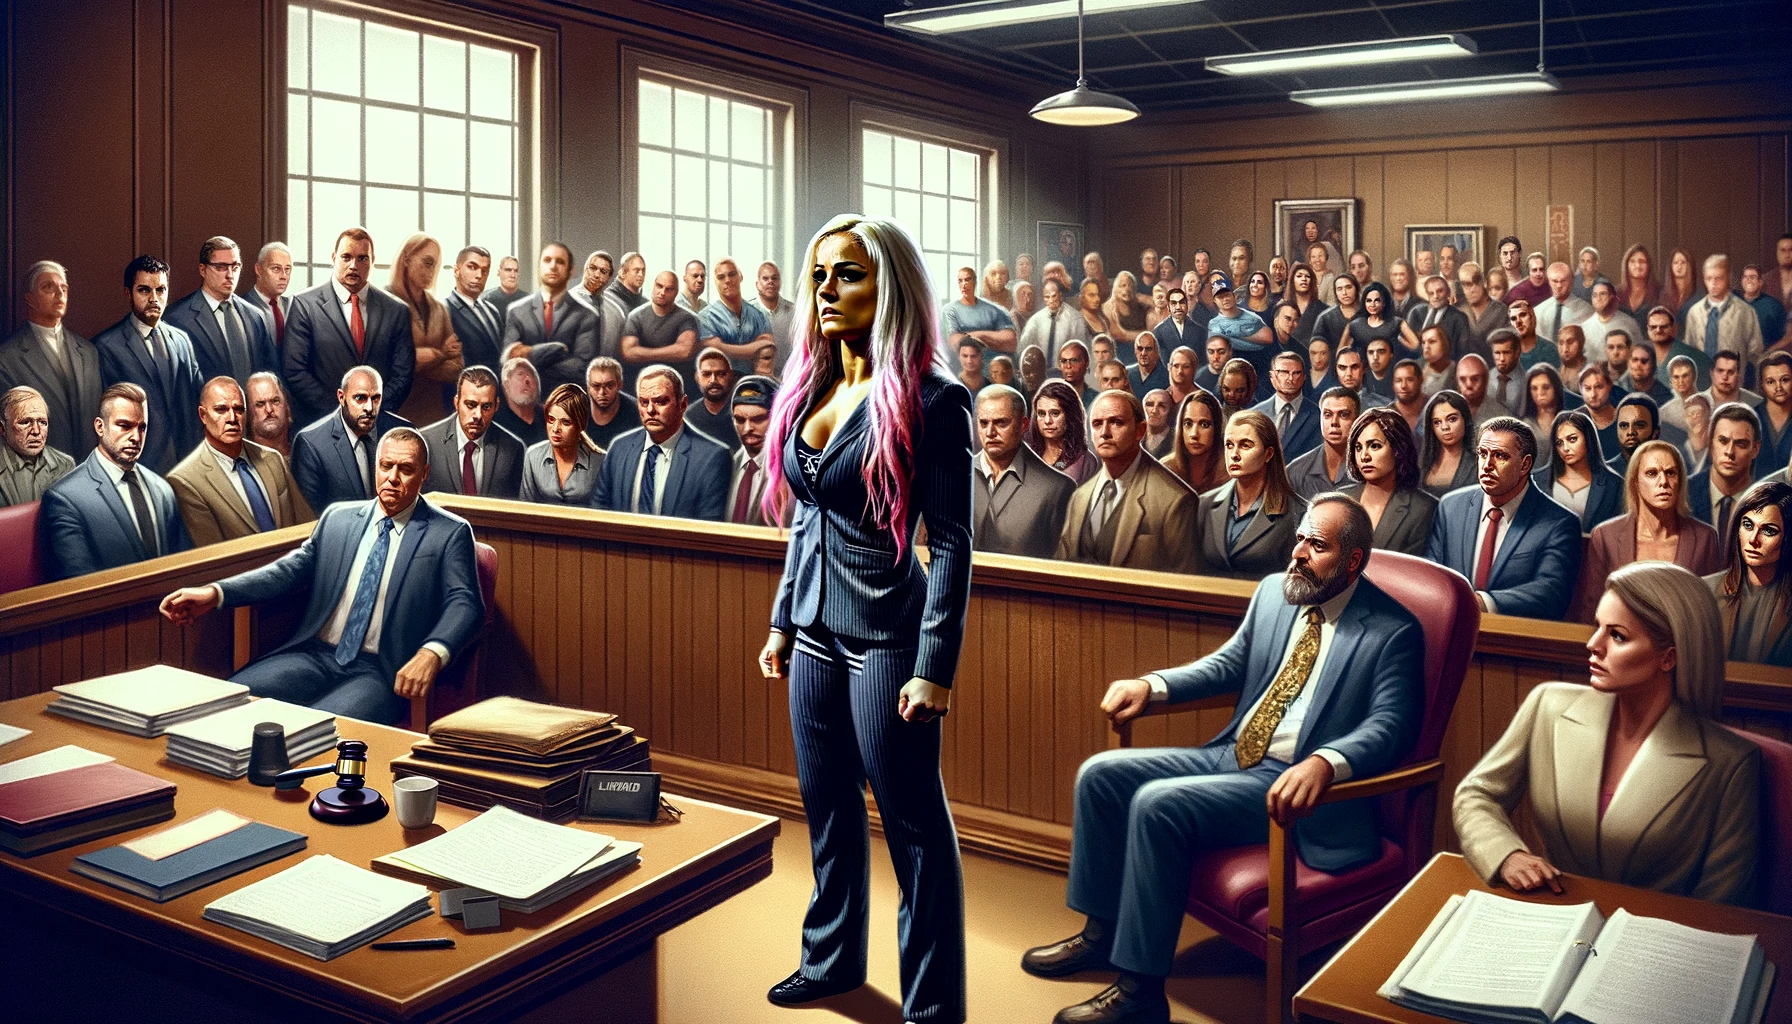 裁判所の中で、中央に立つ金髪の女性弁護士。バックグラウンドには、さまざまな表情をした観客と法律関係者たちがいます。